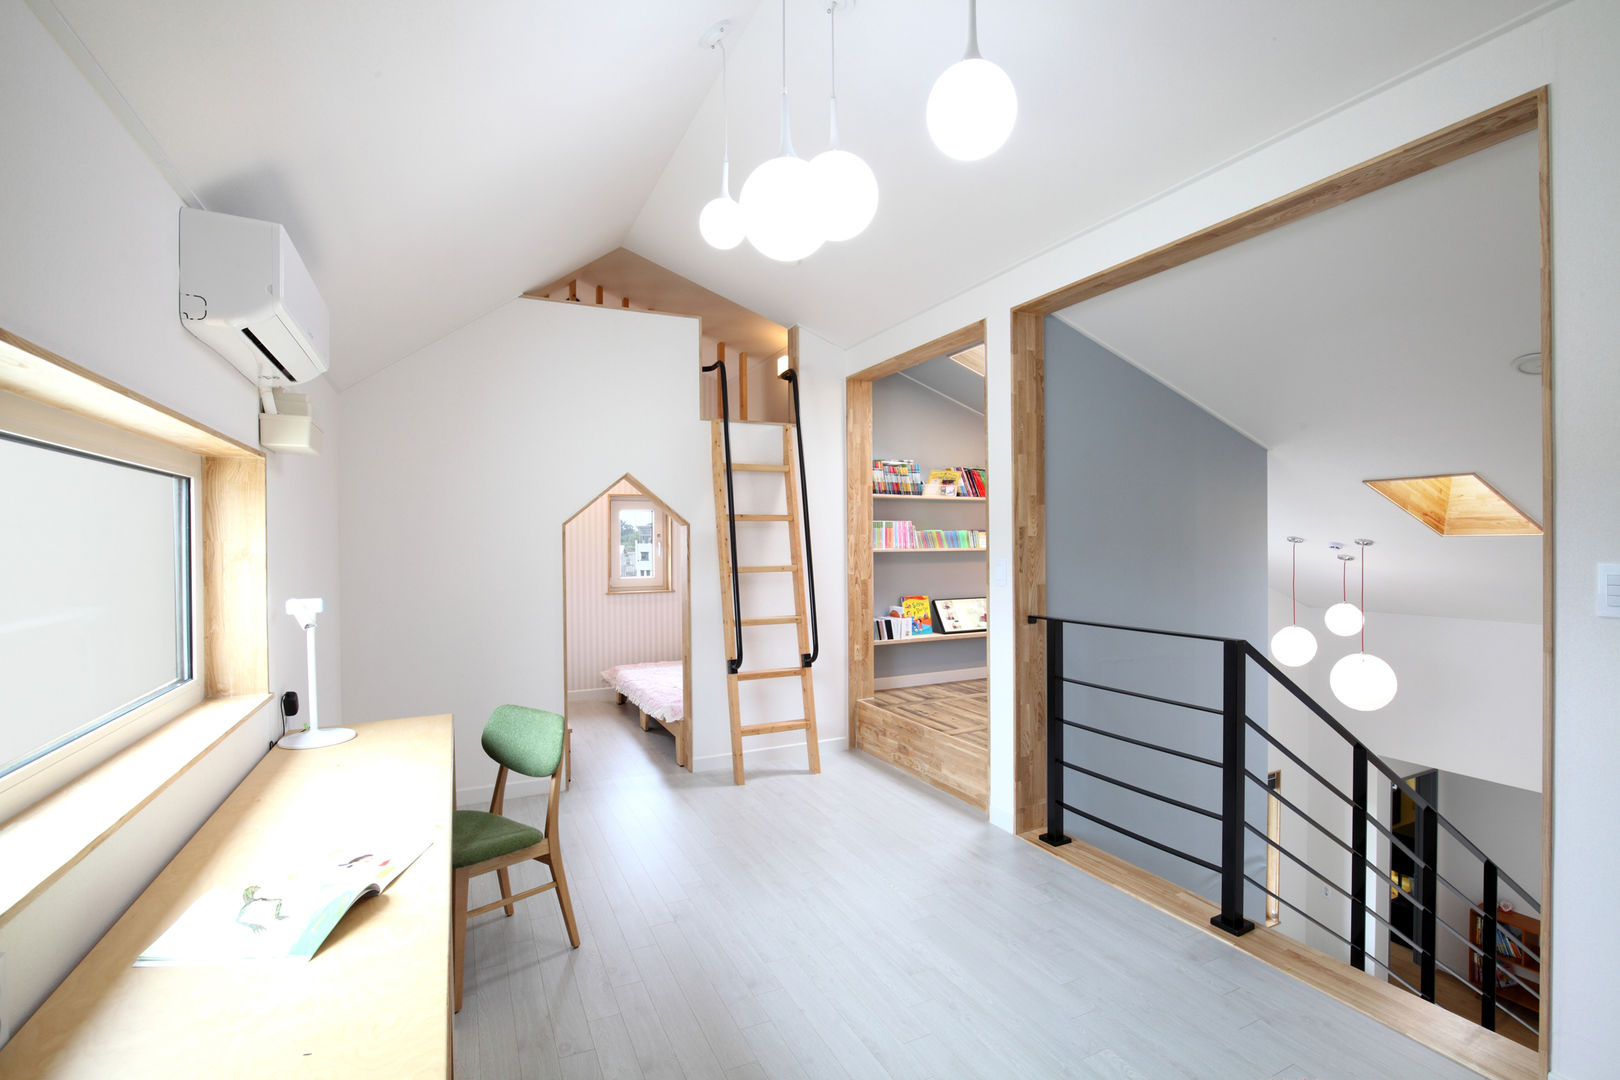 장성 - 세아이가 있는 하얀집, 주택설계전문 디자인그룹 홈스타일토토 주택설계전문 디자인그룹 홈스타일토토 Modern nursery/kids room Chipboard